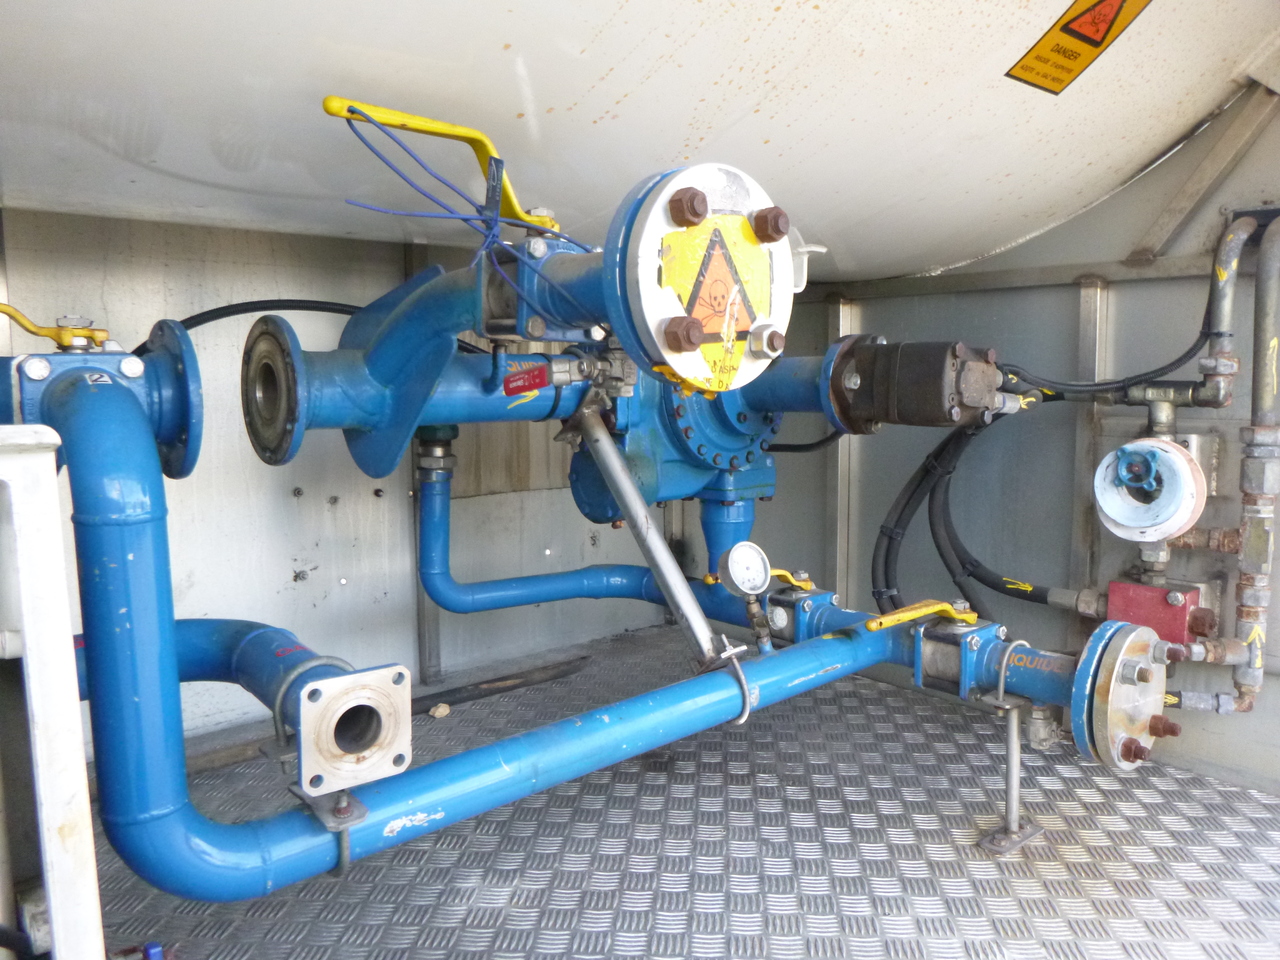 Cisterna semirremolque para transporte de gas Guhur Low-pressure gas tank steel 31.5 m3 / 10 bar (methyl chloride): foto 14